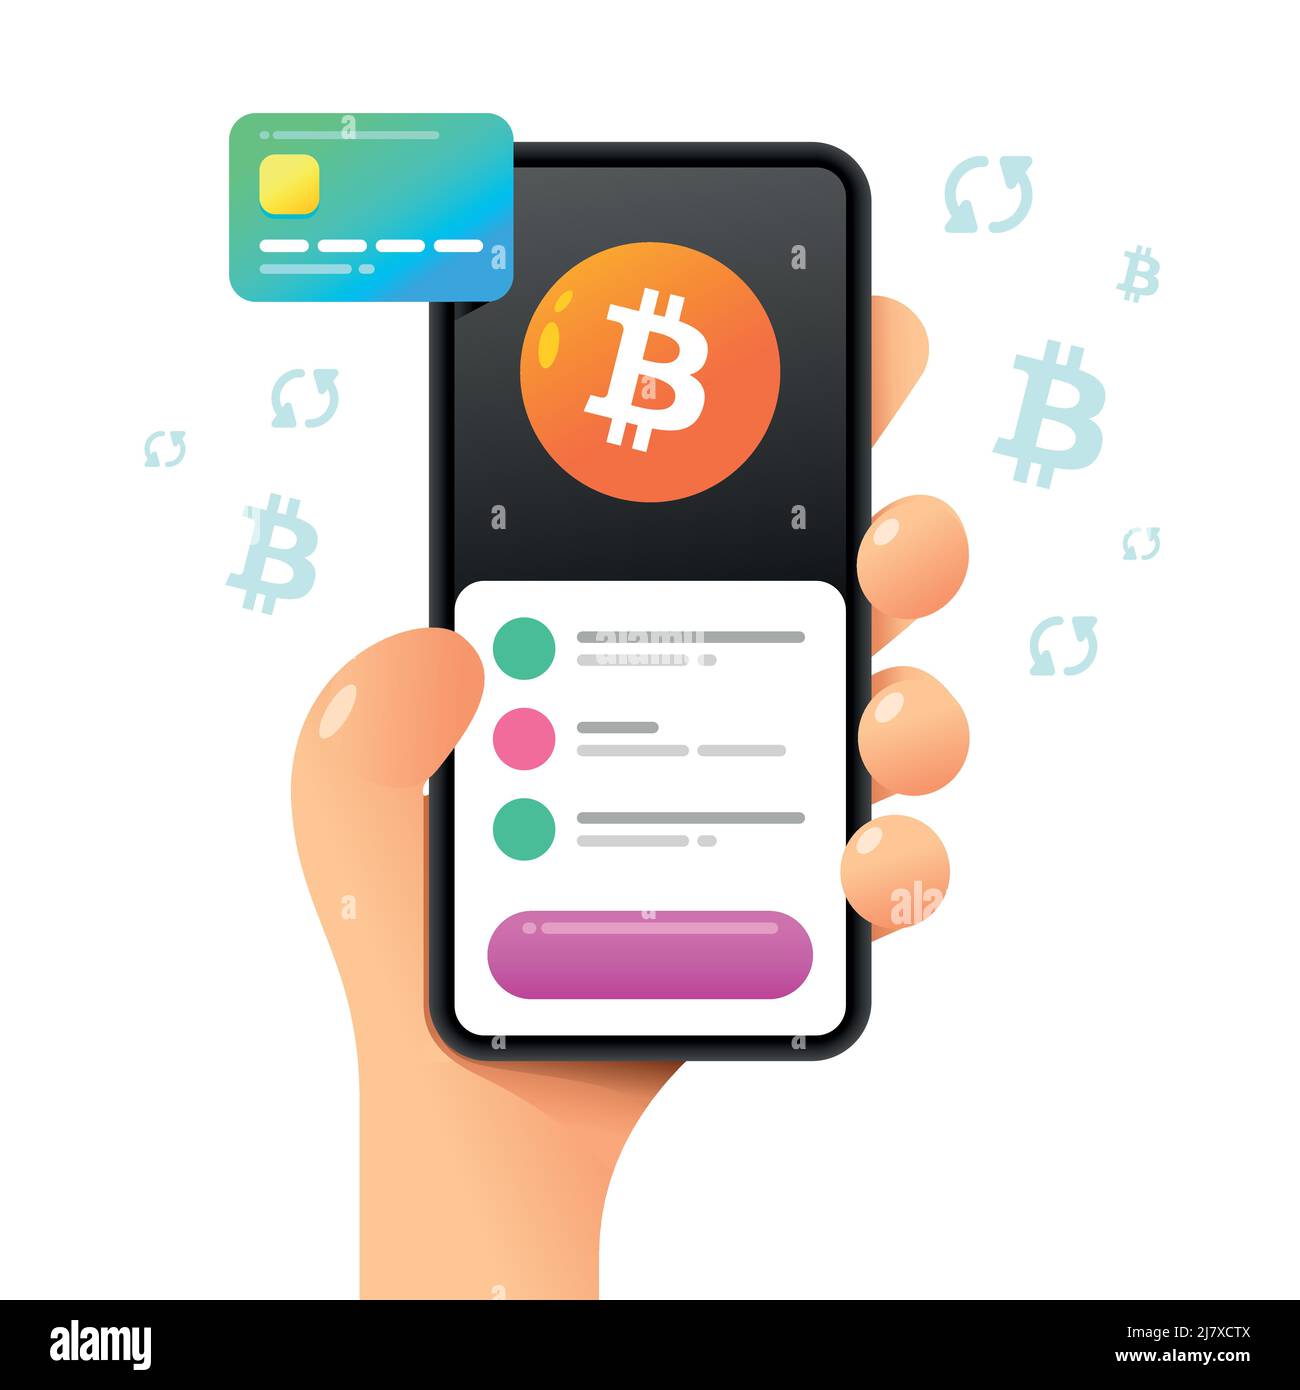 Une maquette de smartphone dans la main. Opération d'échange. Bitcoin et carte de crédit. Illustration de crypto-monnaie vectorielle colorée Illustration de Vecteur